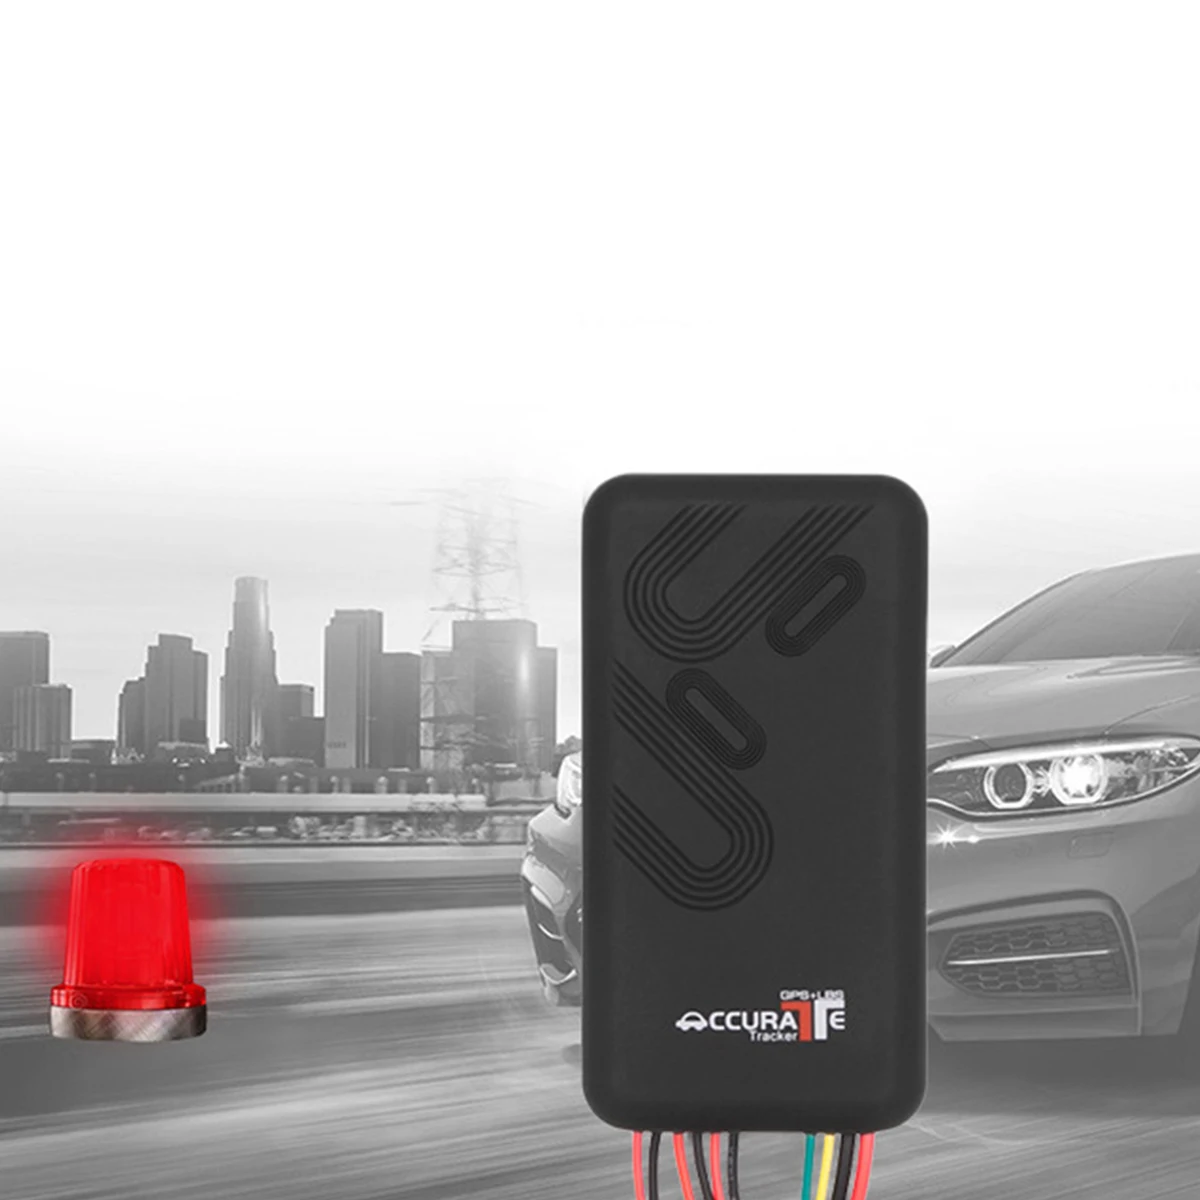 Gt06 Gps трекер 4 полосы автомобиля Google Link GSM GPRS данных Высокая скорость Платформа Система слежения за автомобилем монитор дистанционного управления сигнализации